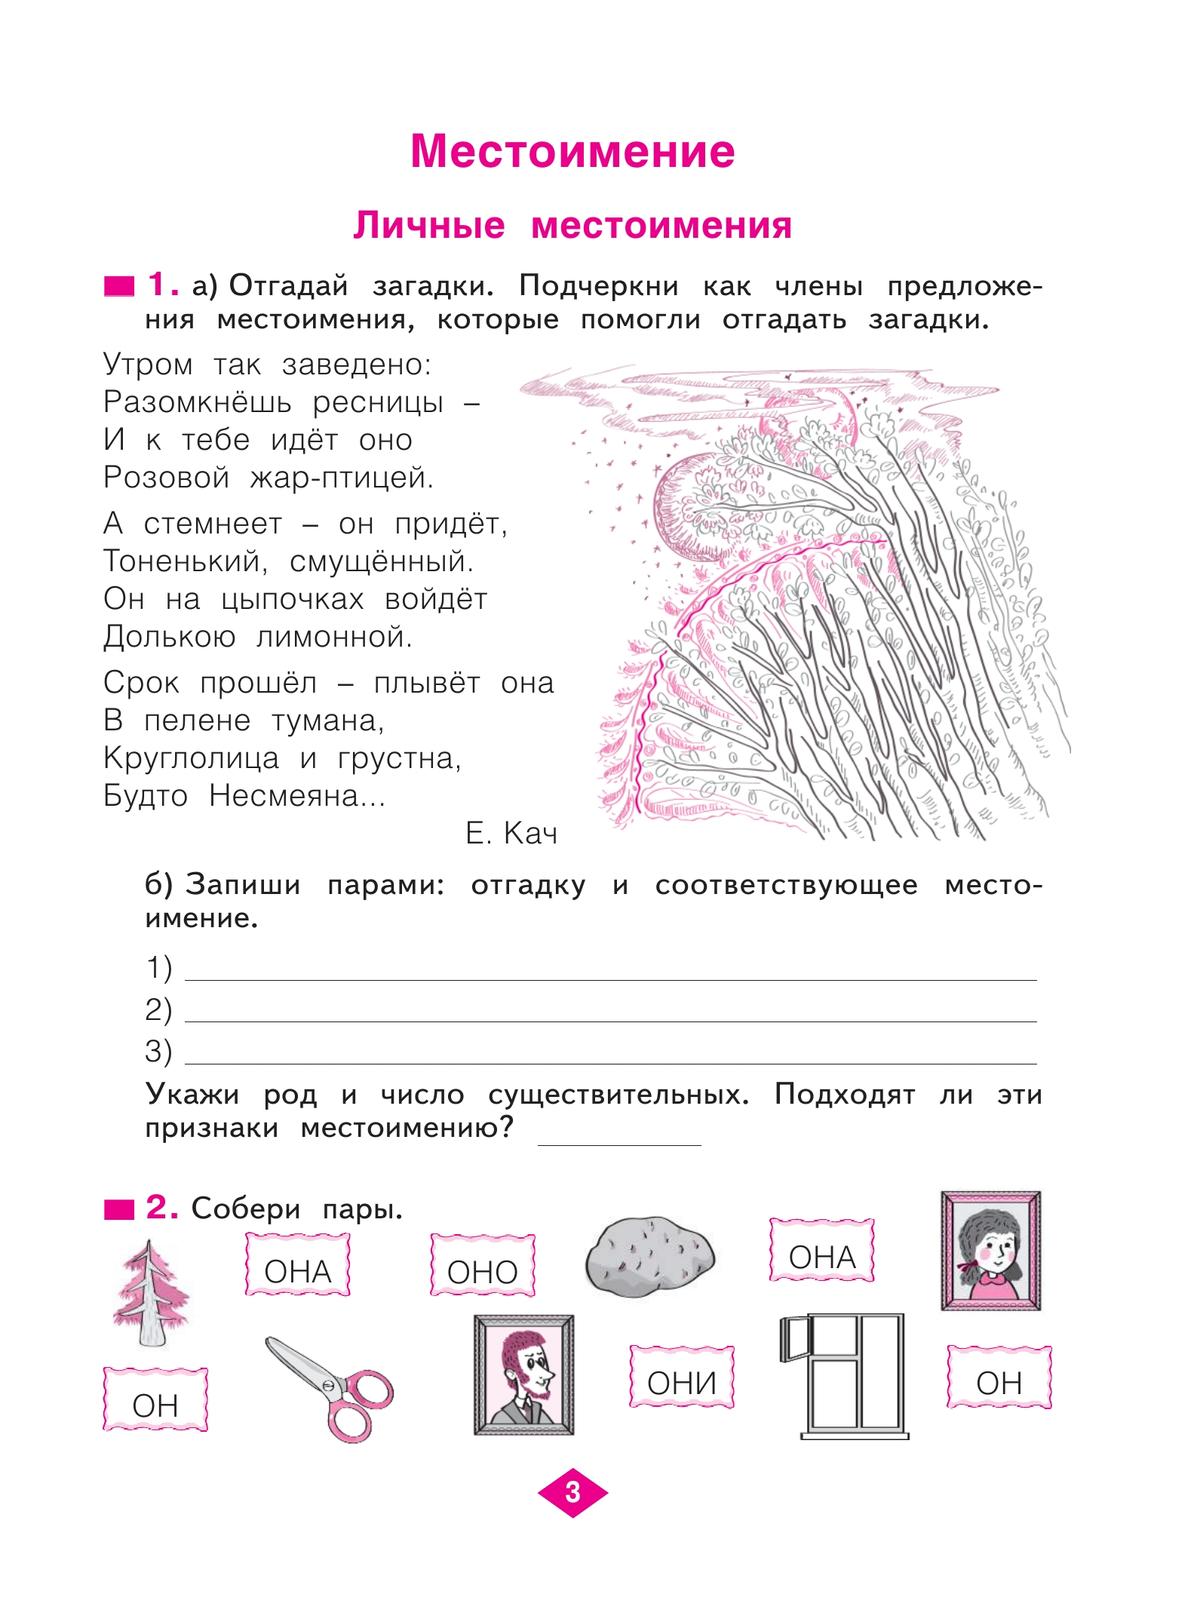 Русский язык. Рабочая тетрадь. 4 класс. В 4-х частях. Часть 2 6